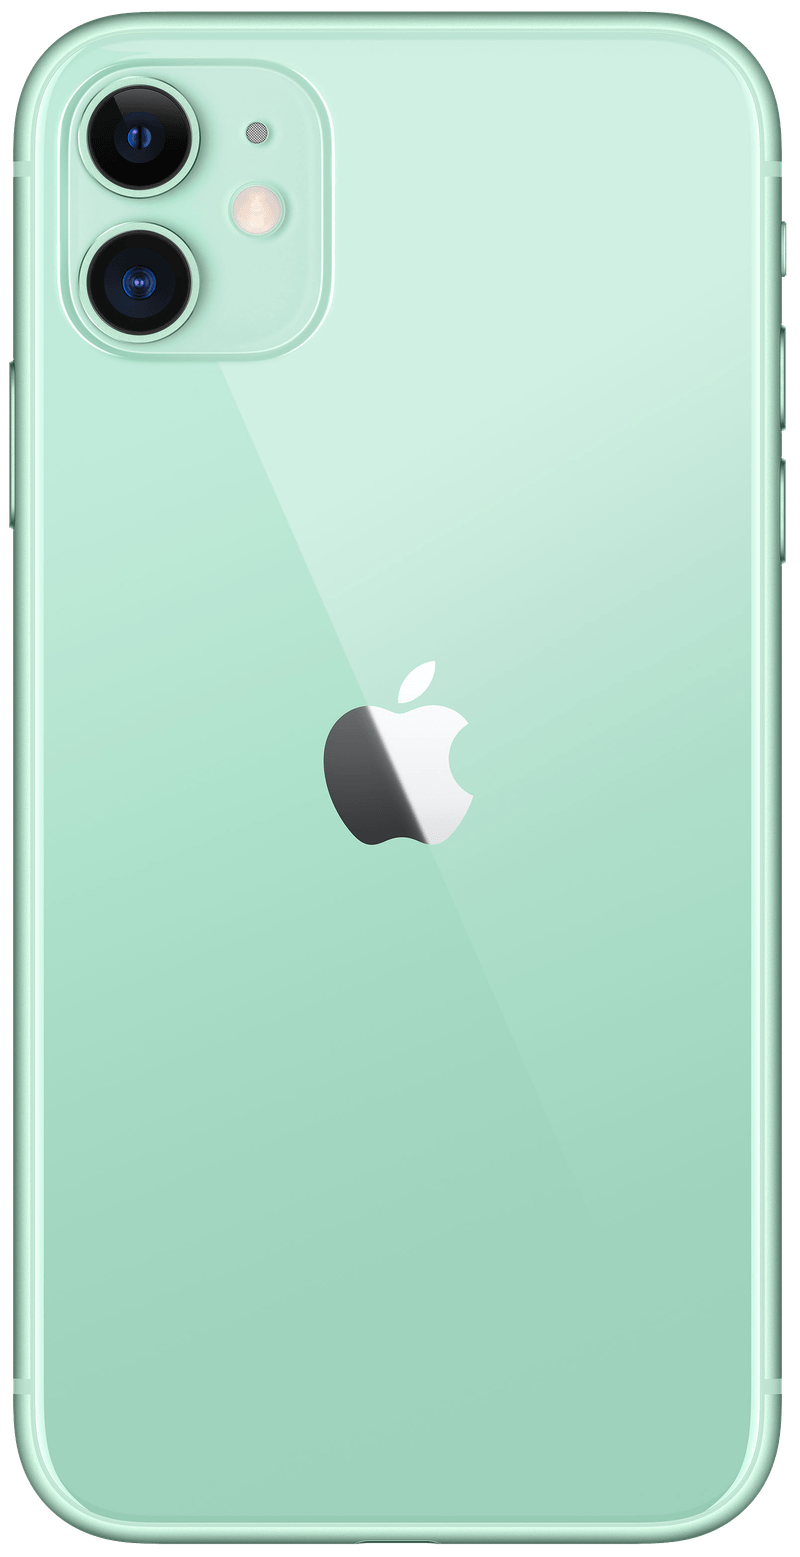 iPhone 11 128 Gb Verde, iPhone reacondicionado